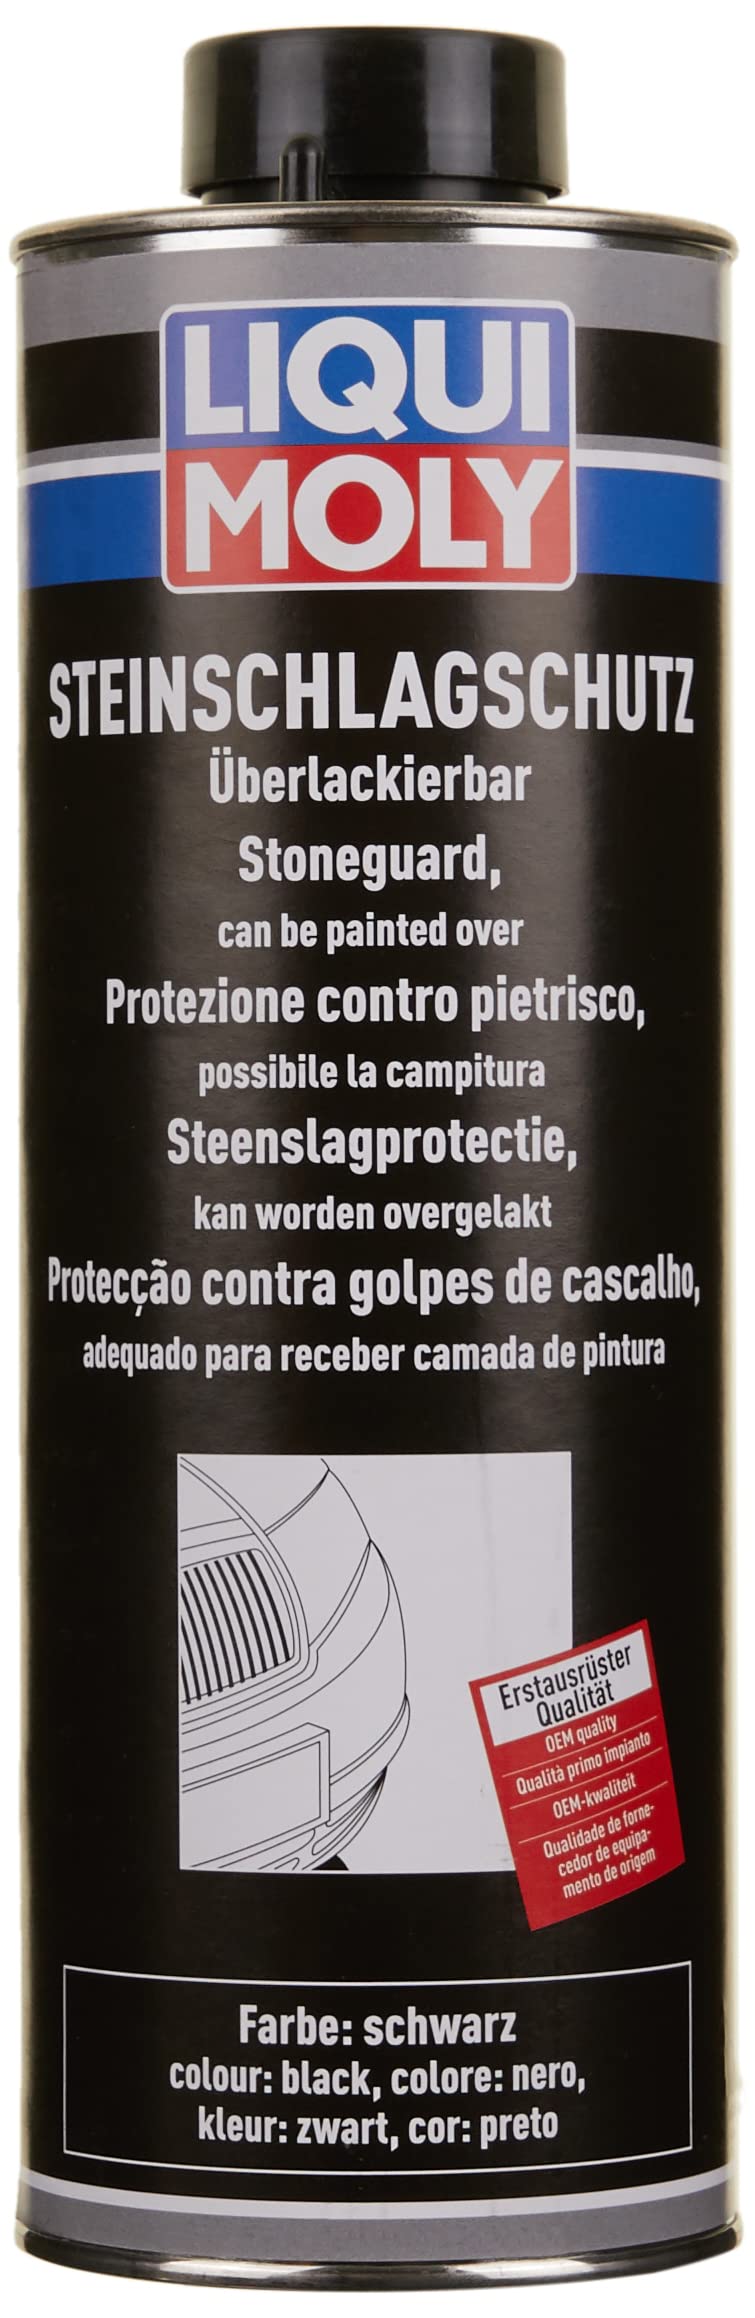 LIQUI MOLY Steinschlagschutz schwarz | 1 L | Karosserieschutz | Unterbodenschutz | Steinschlagschutz | Art.-Nr.: 6110 von Liqui Moly